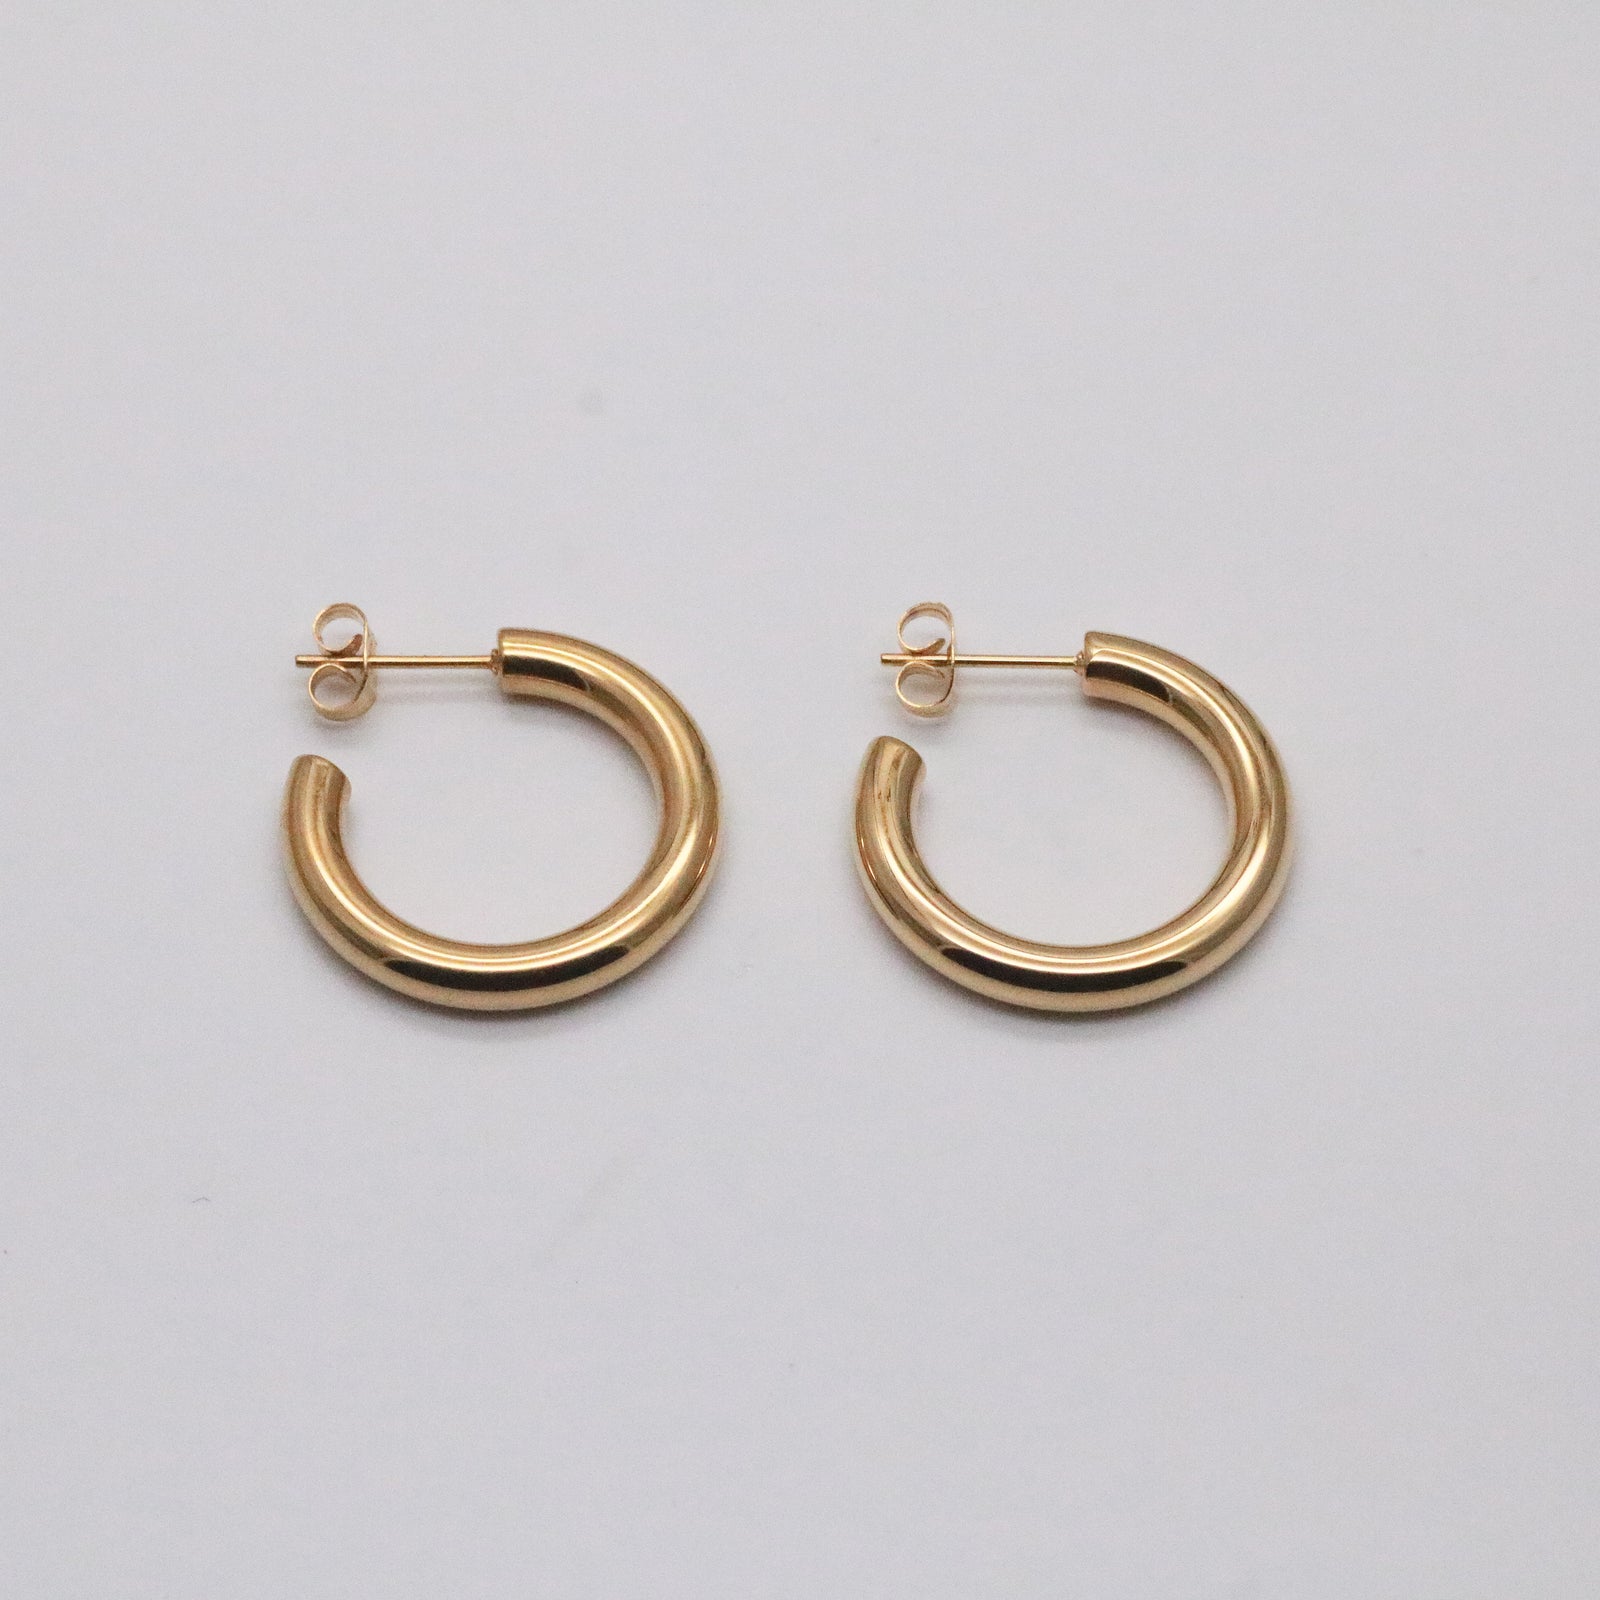 26mm gold hoop earrings